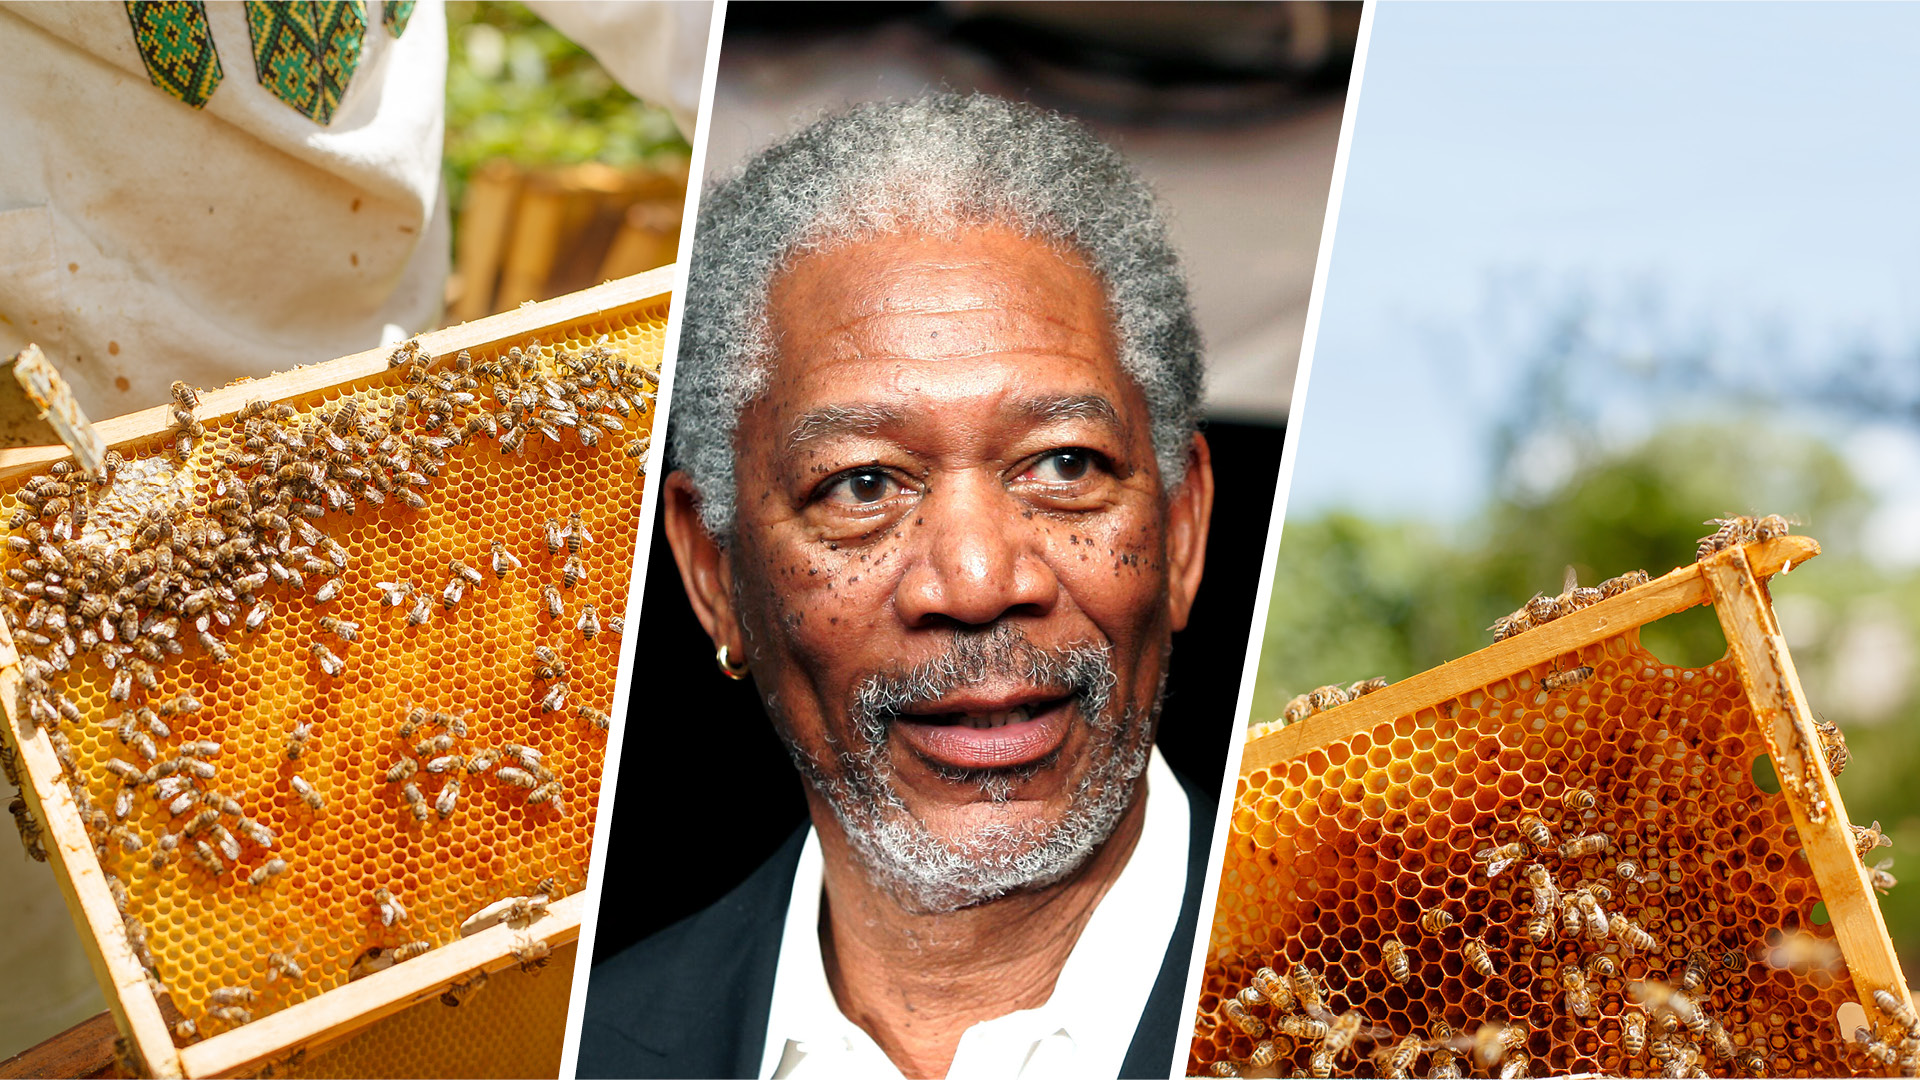 ÙØªÙØ¬Ø© Ø¨Ø­Ø« Ø§ÙØµÙØ± Ø¹Ù âªMorgan Freeman converts his 124-acre ranch into a bee sanctuaryâ¬â